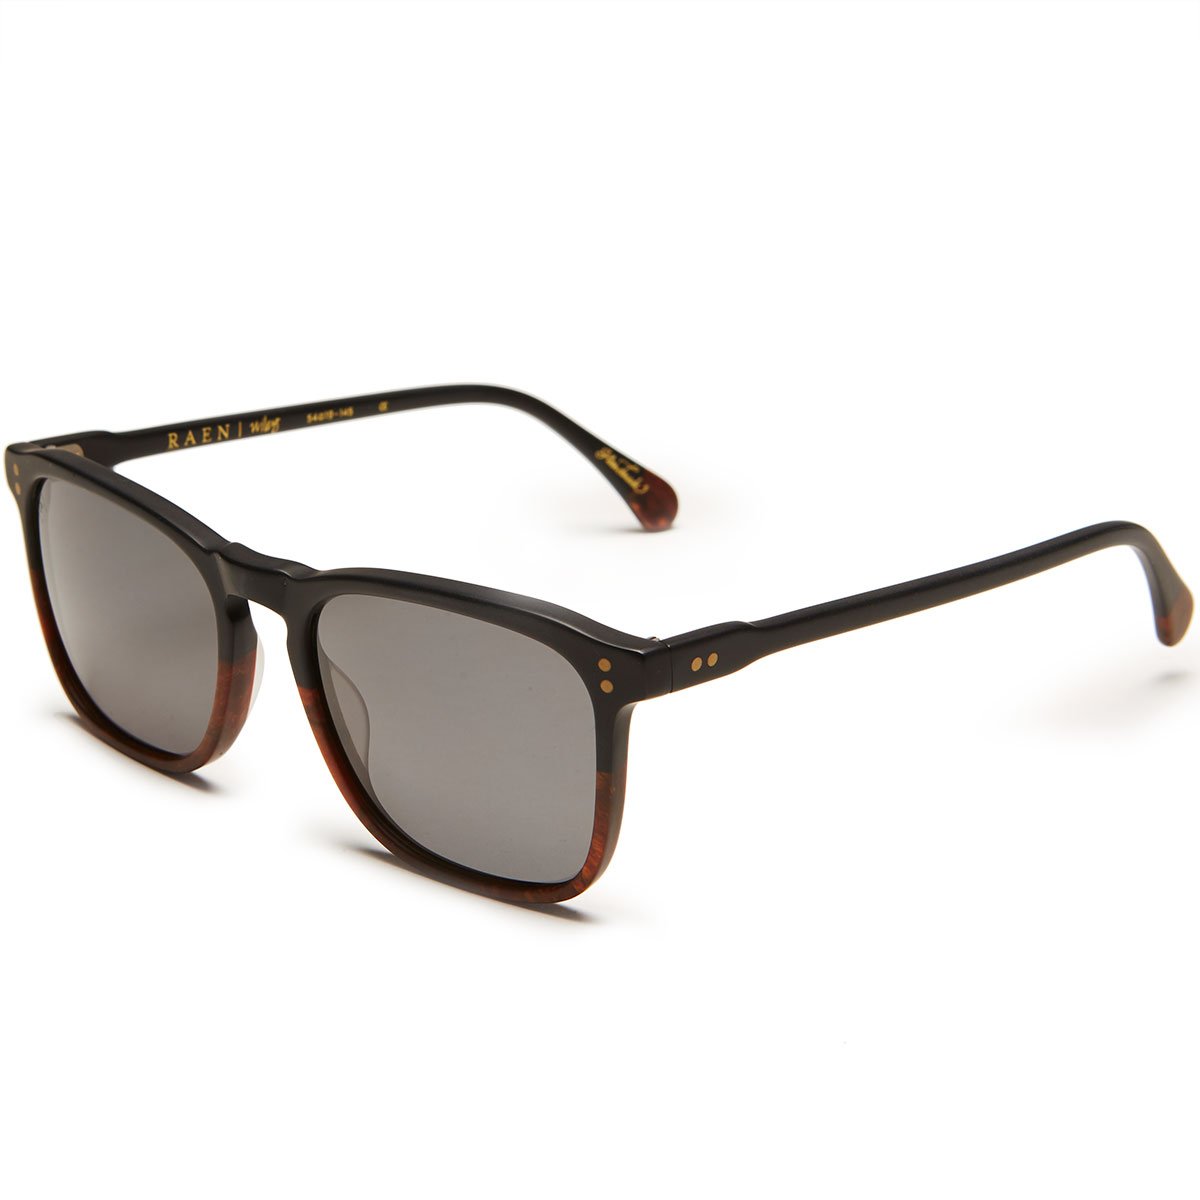 Raen Wiley Sunglasses - Burlwood/Black Polarized image 1